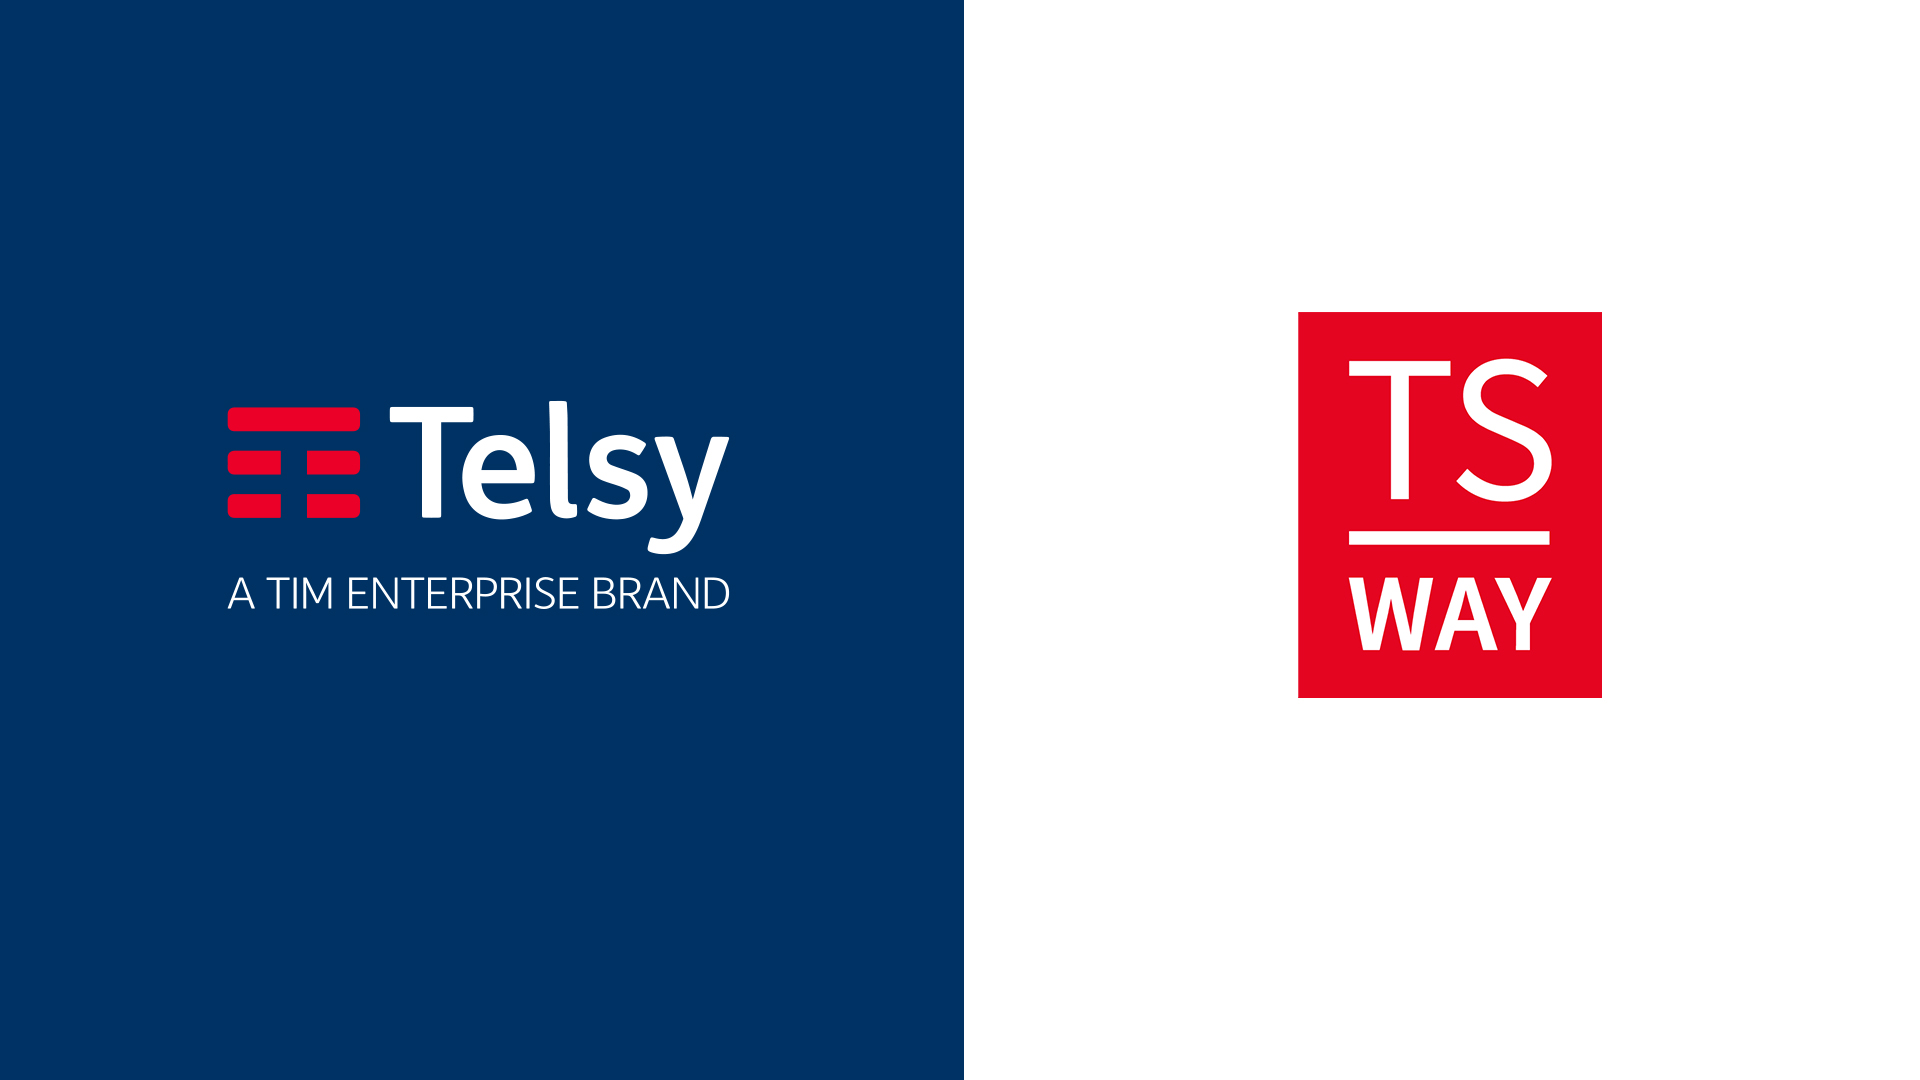 Telsy_TS WAY